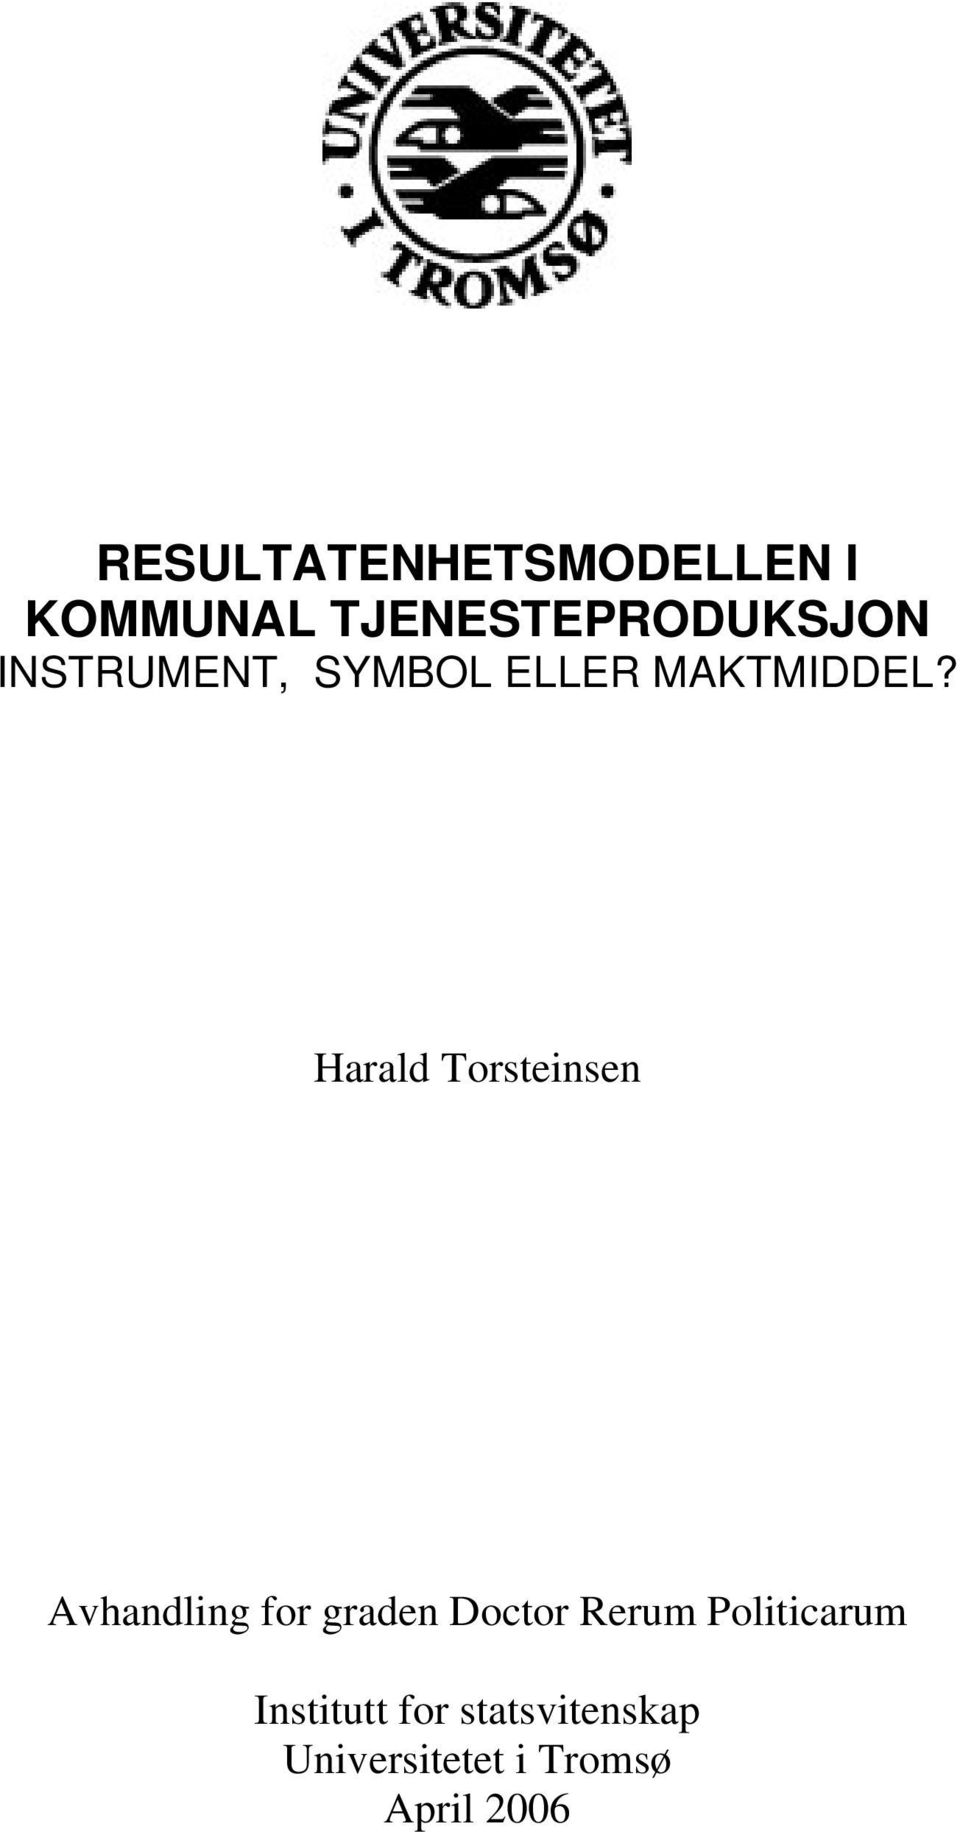 Harald Torsteinsen Avhandling for graden Doctor Rerum